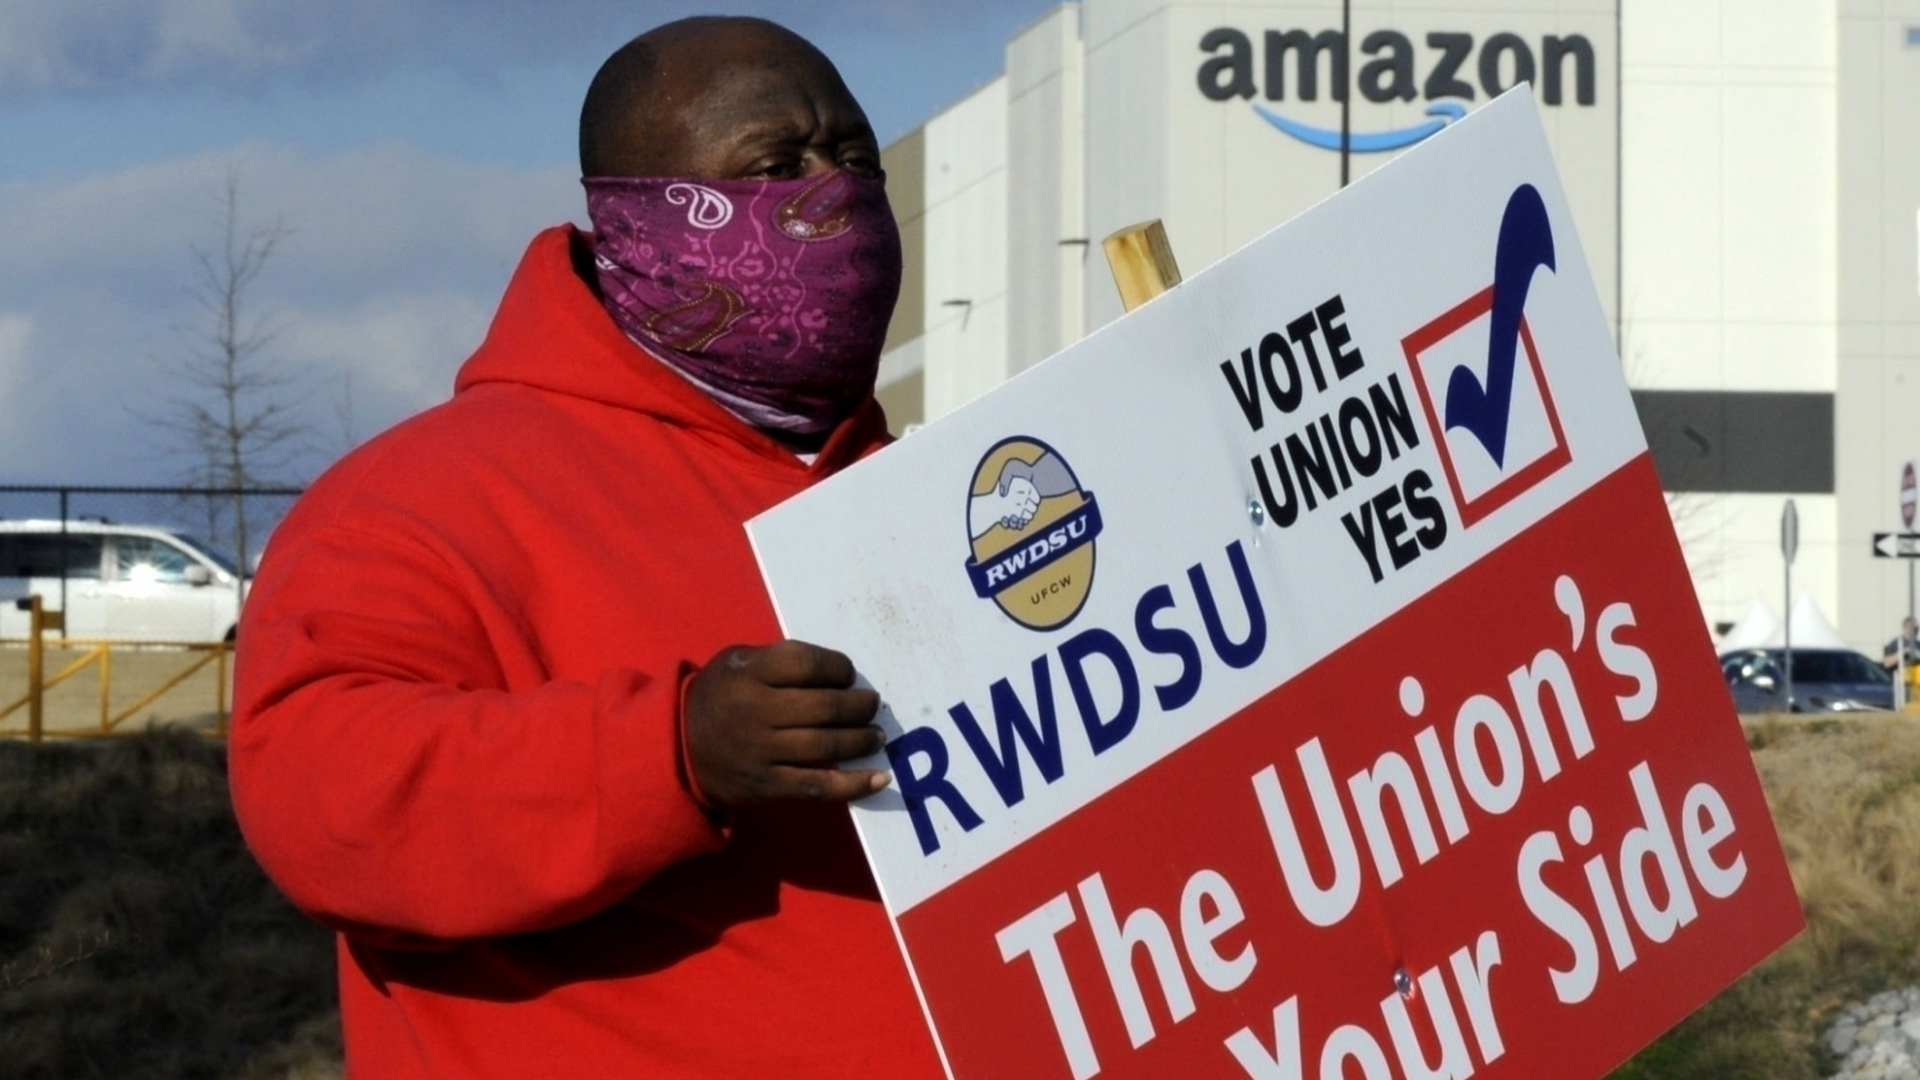 Amazon-Mitarbeiter wirbt für Gewerkschaftsgründung | AP